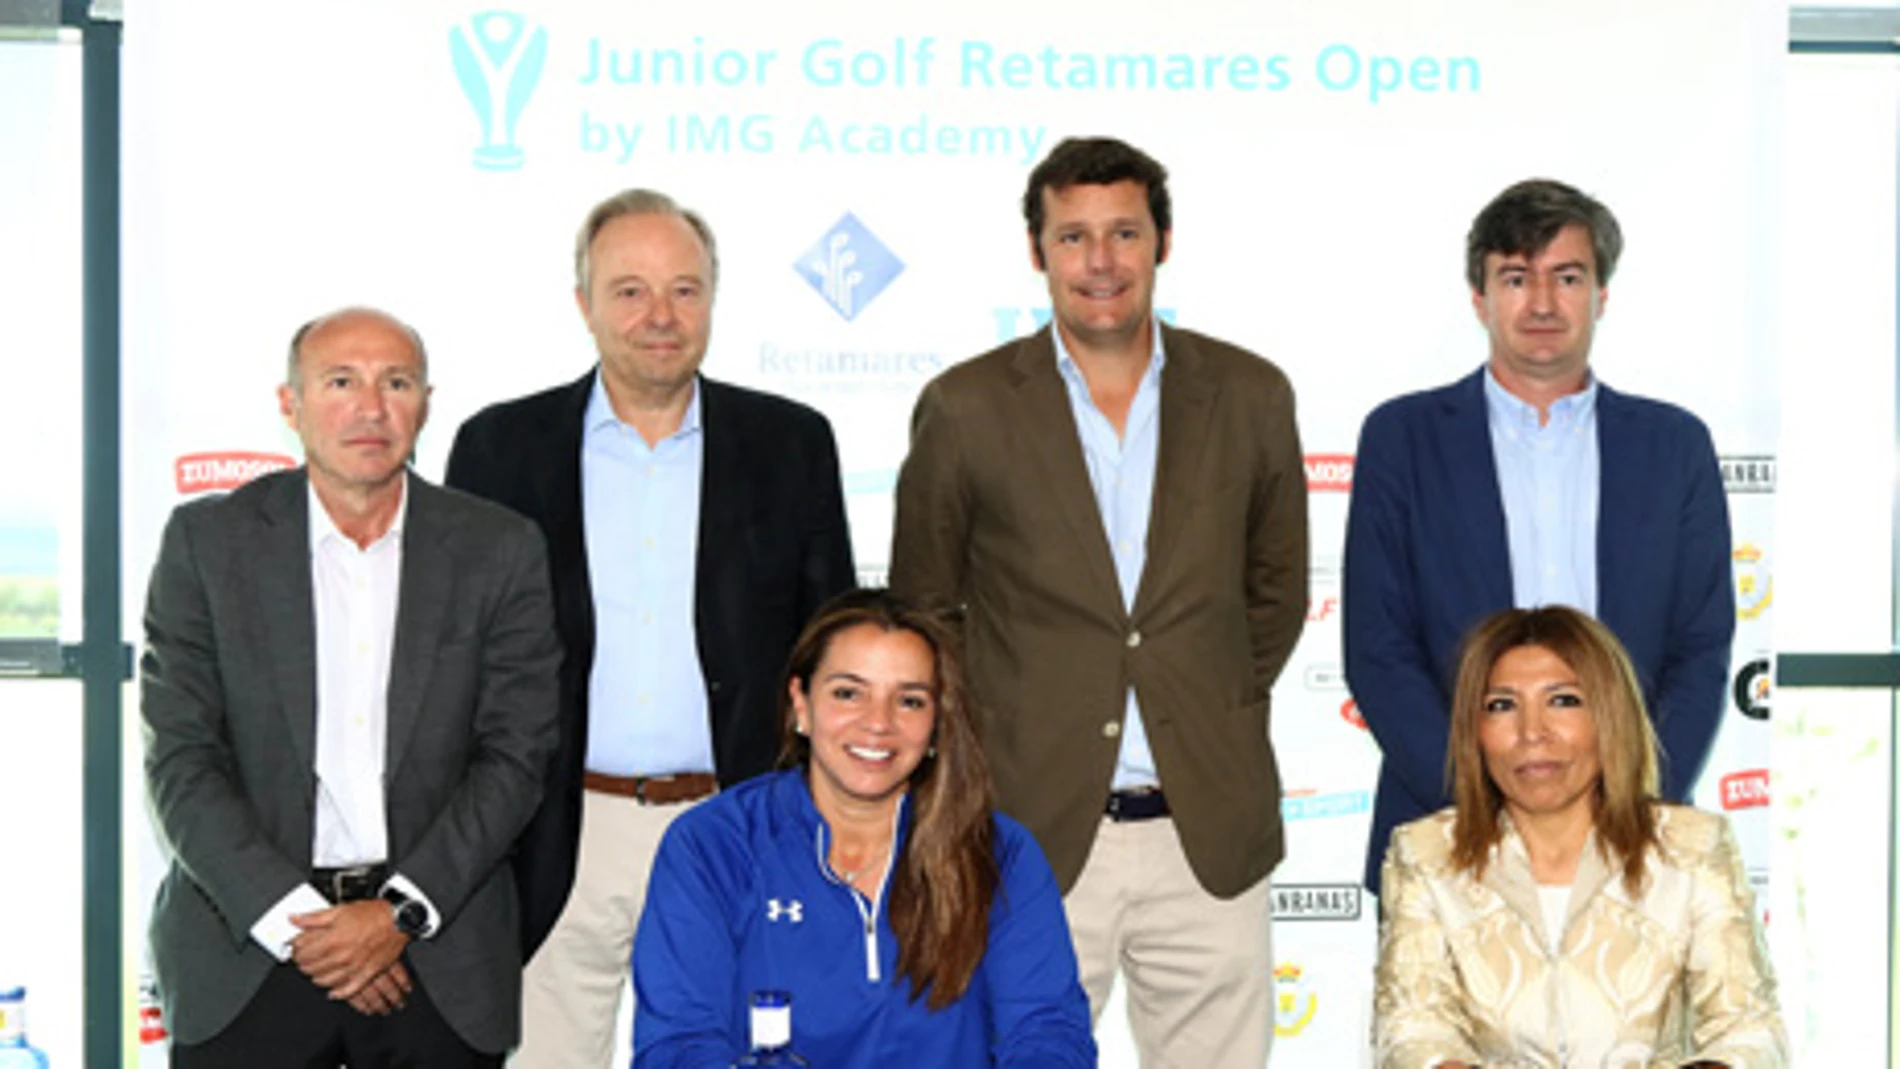 Presentación Open Golf Junior Retamares